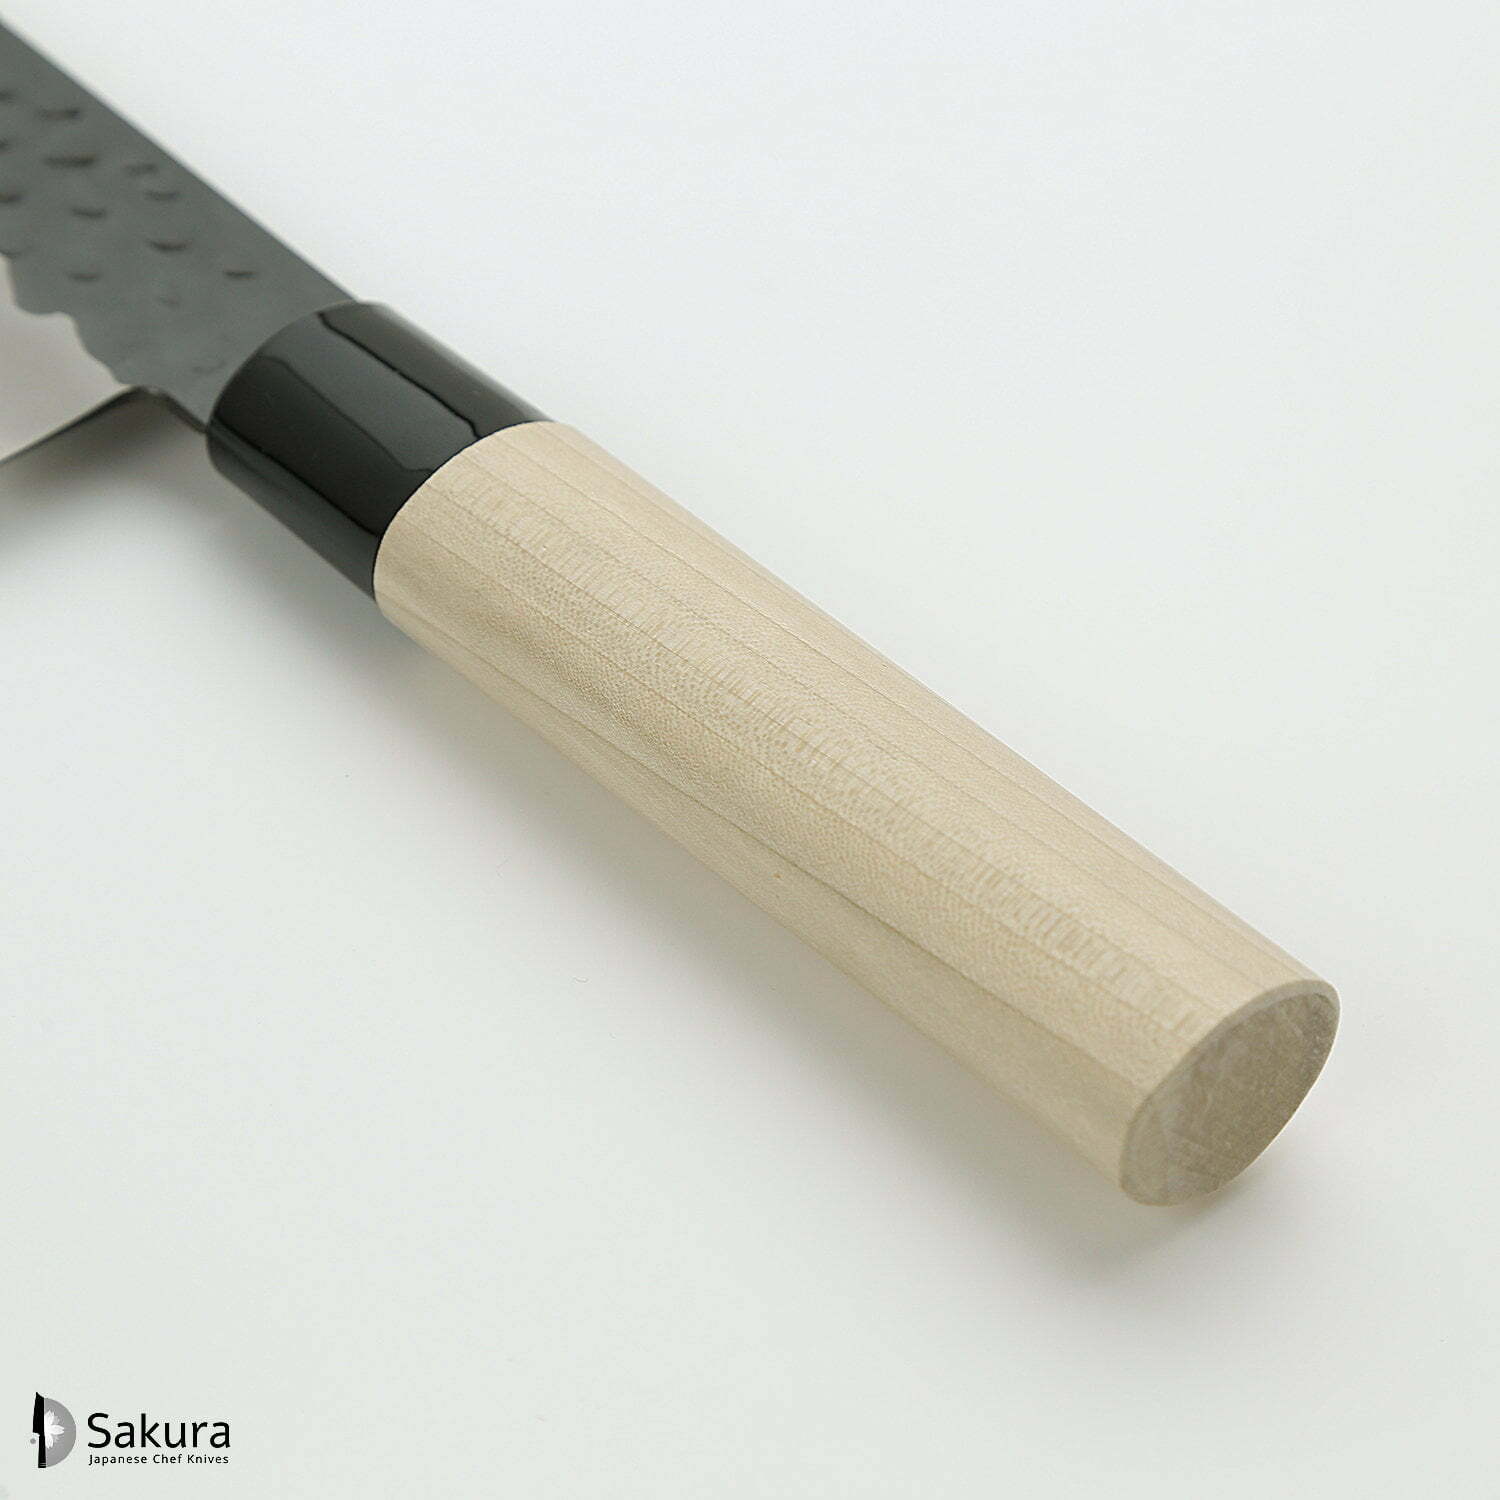 סכין שף רב-תכליתית גִּיוּטוֹ 240מ״מ מחוזקת 3 שכבות: פלדת פחמן יפנית VG-10 עטופה פלדת אל-חלד גימור קורואיצ׳י שחור עם ריקוע פטיש טוג׳ירו יפן